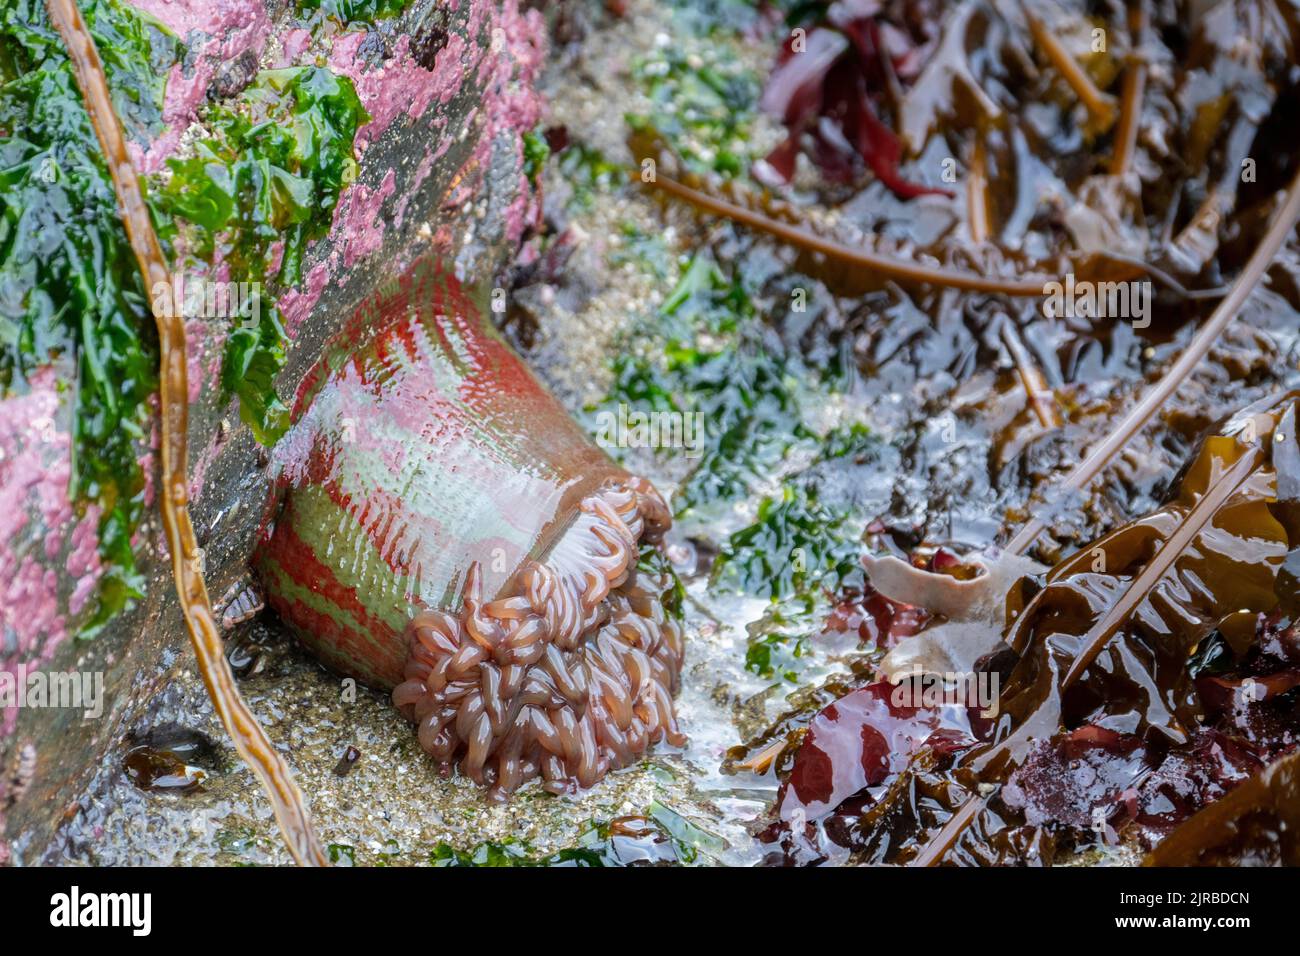 USA, SE Alaska, Inside Passage, Wood Spit. Warty painted anemone aka Christmas anemone (Urticina grebelnyi) Stock Photo